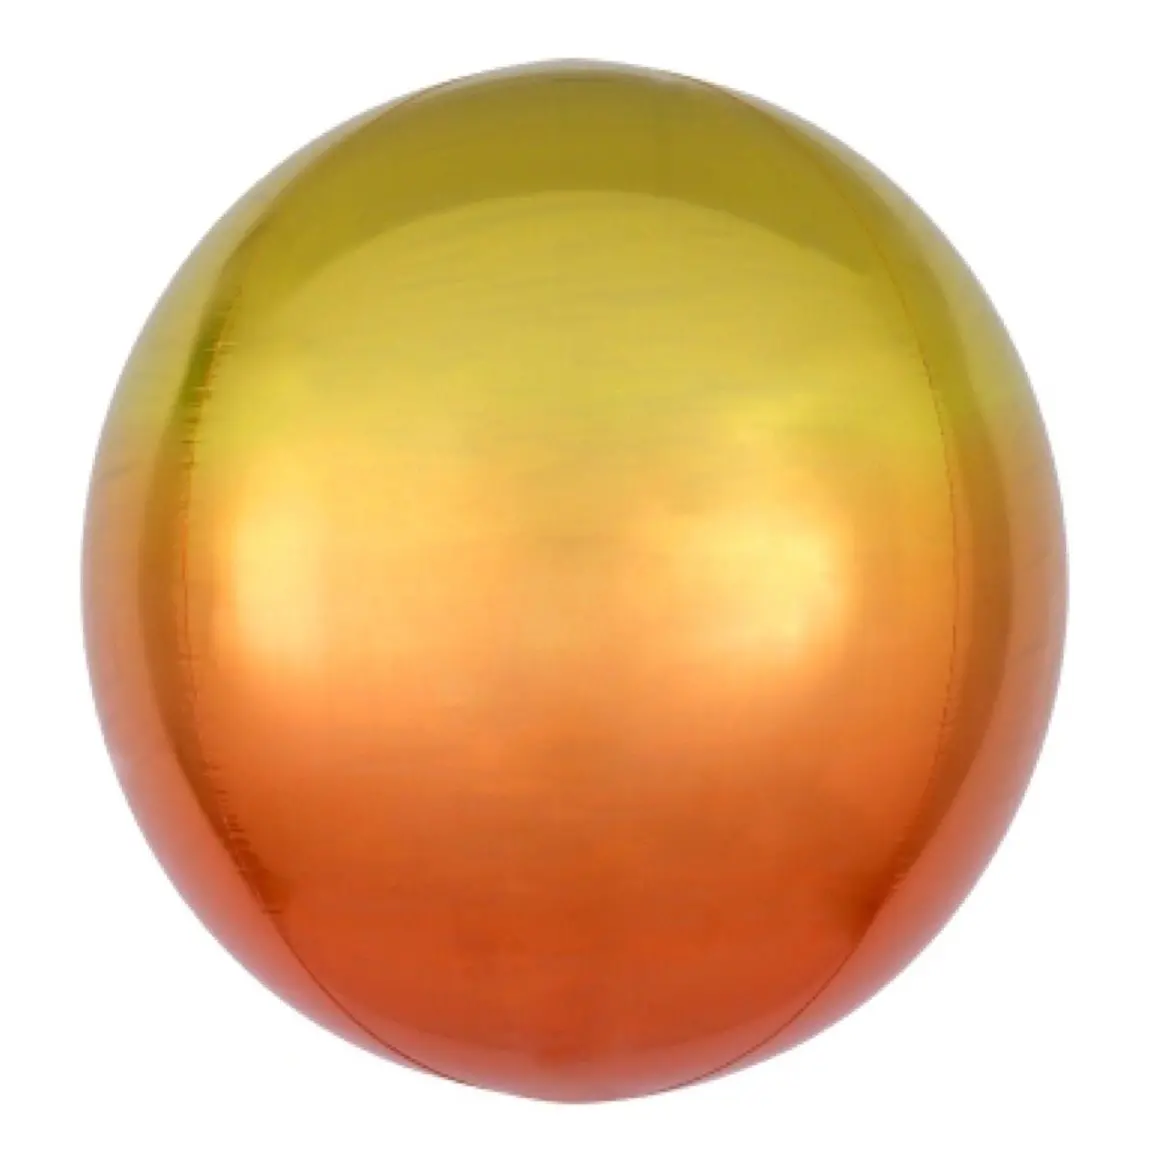 ORBZ sphere balloon - Orange Yellow